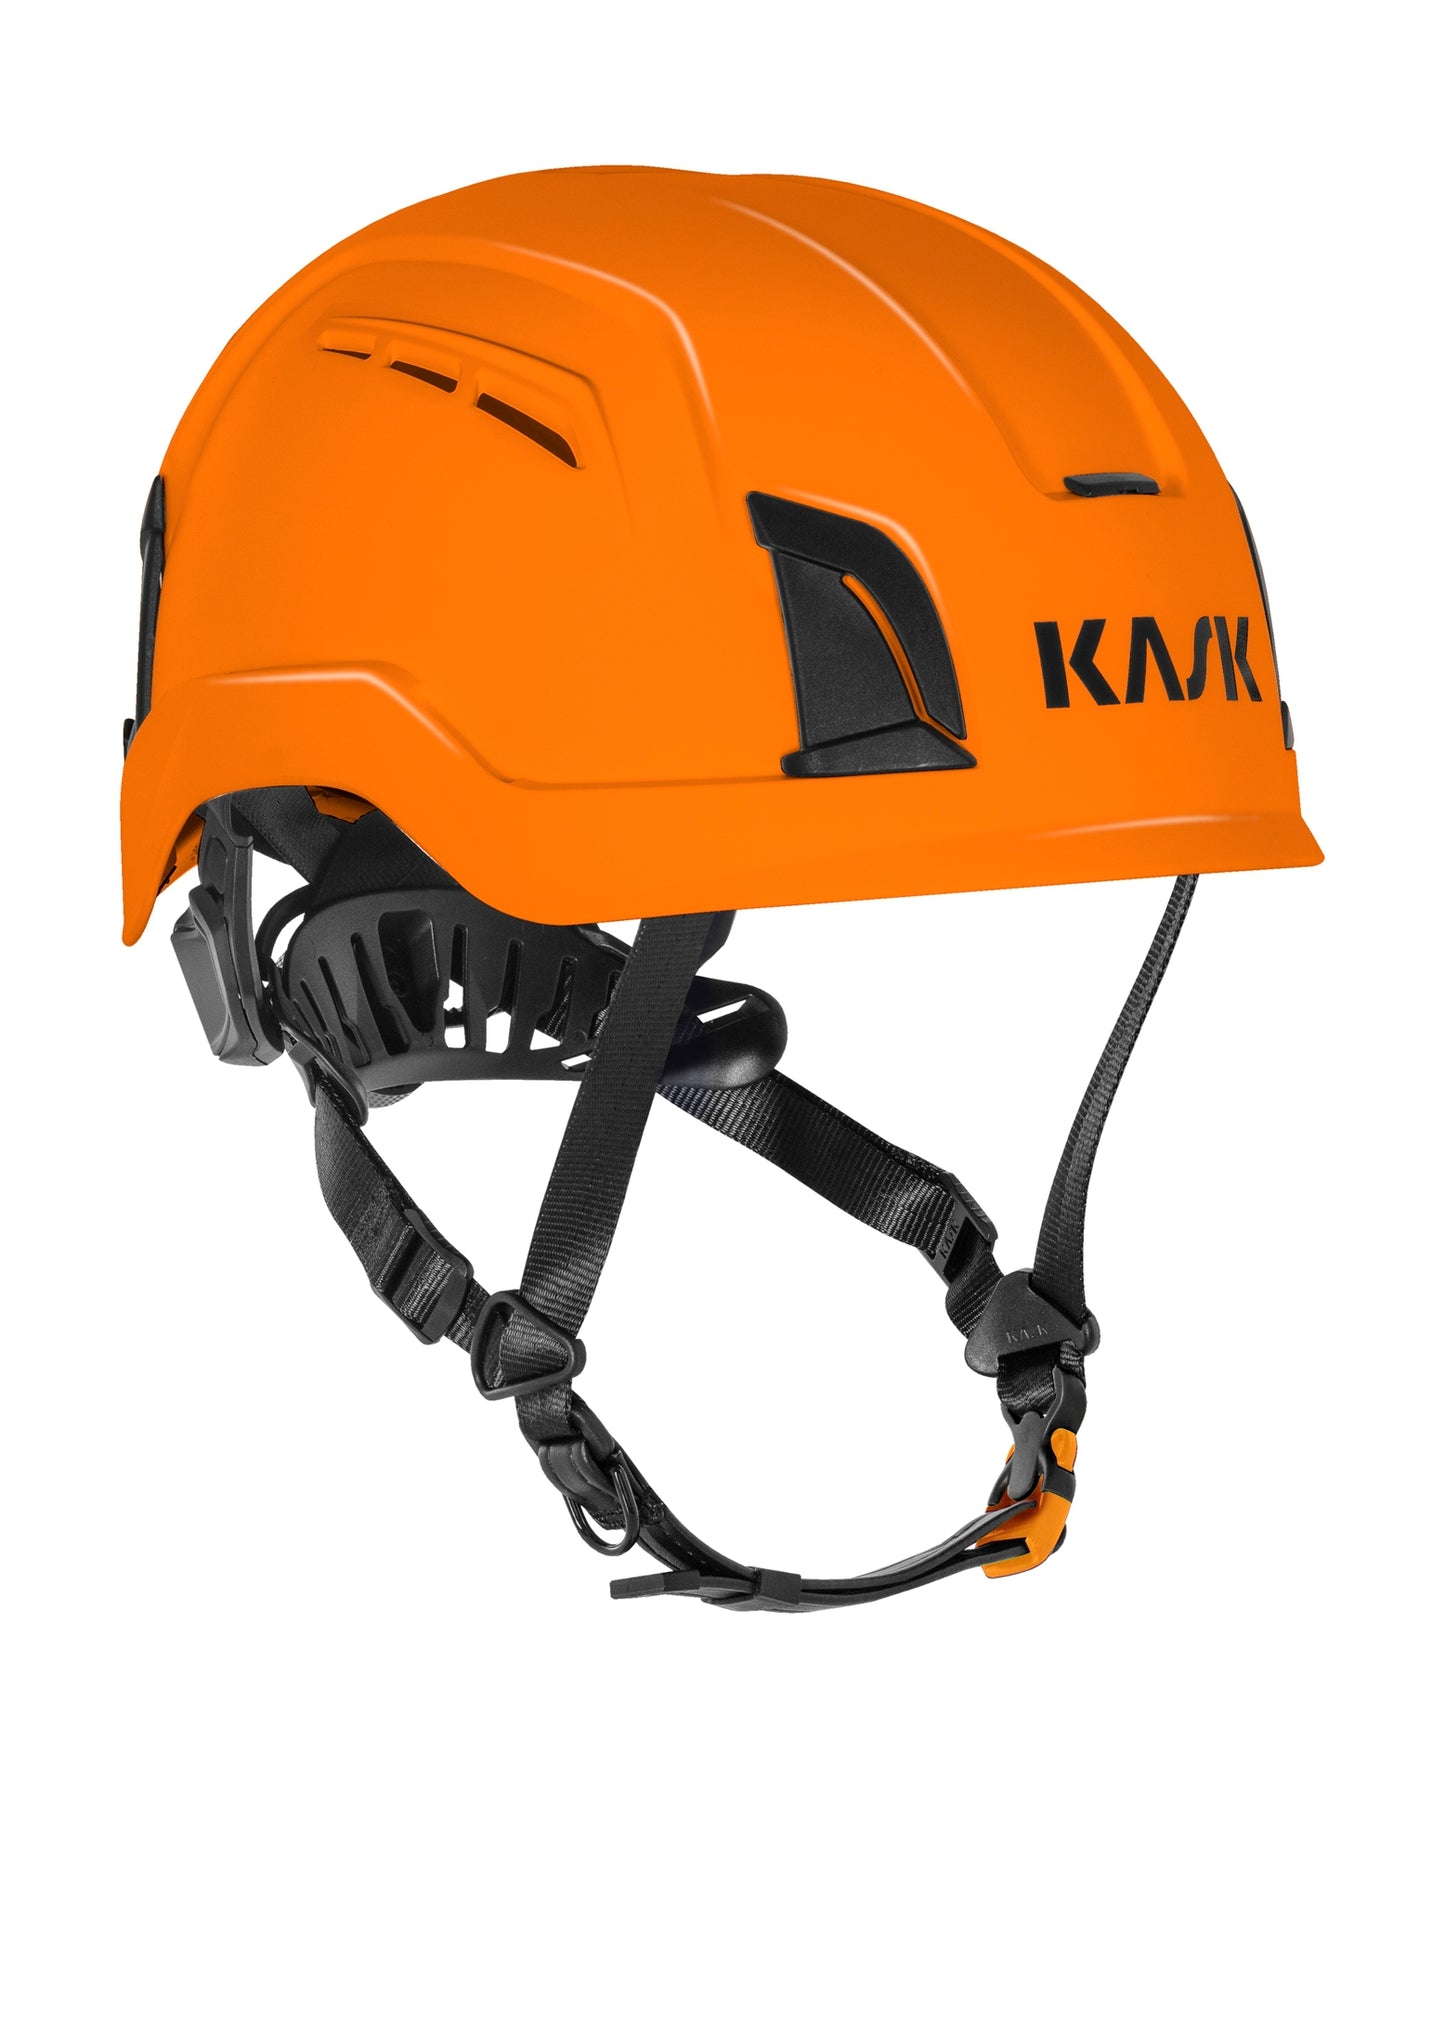 Kask ZENITH X  通風款安全頭盔 [ EN 397 /  EN50365 防電流認證 ] 11色